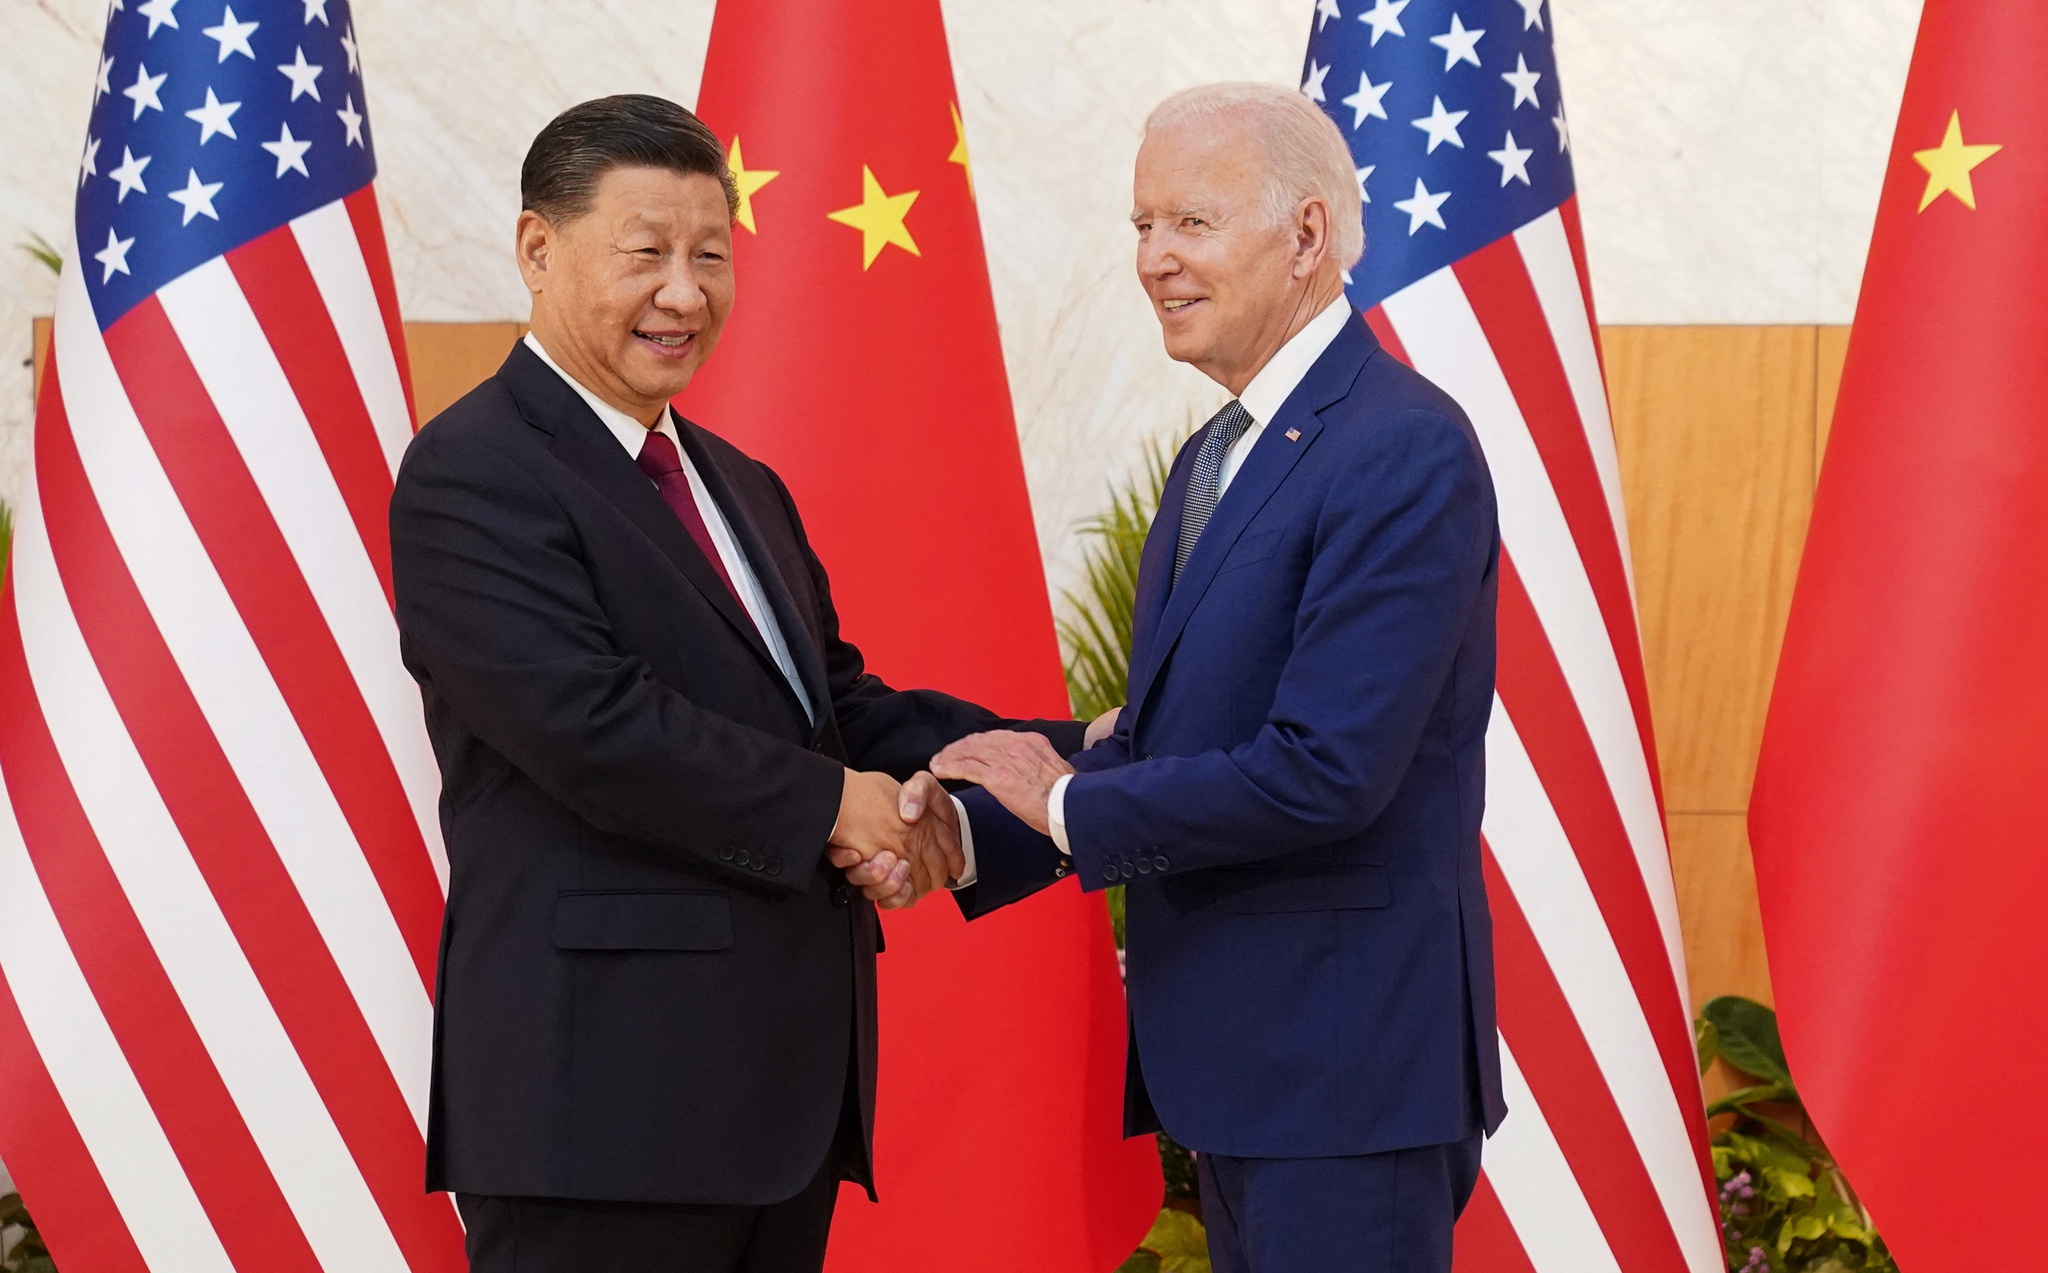 Clipping Digital | Biden e Xi encontram-se para “evitar que a competição se transforme em conflito”